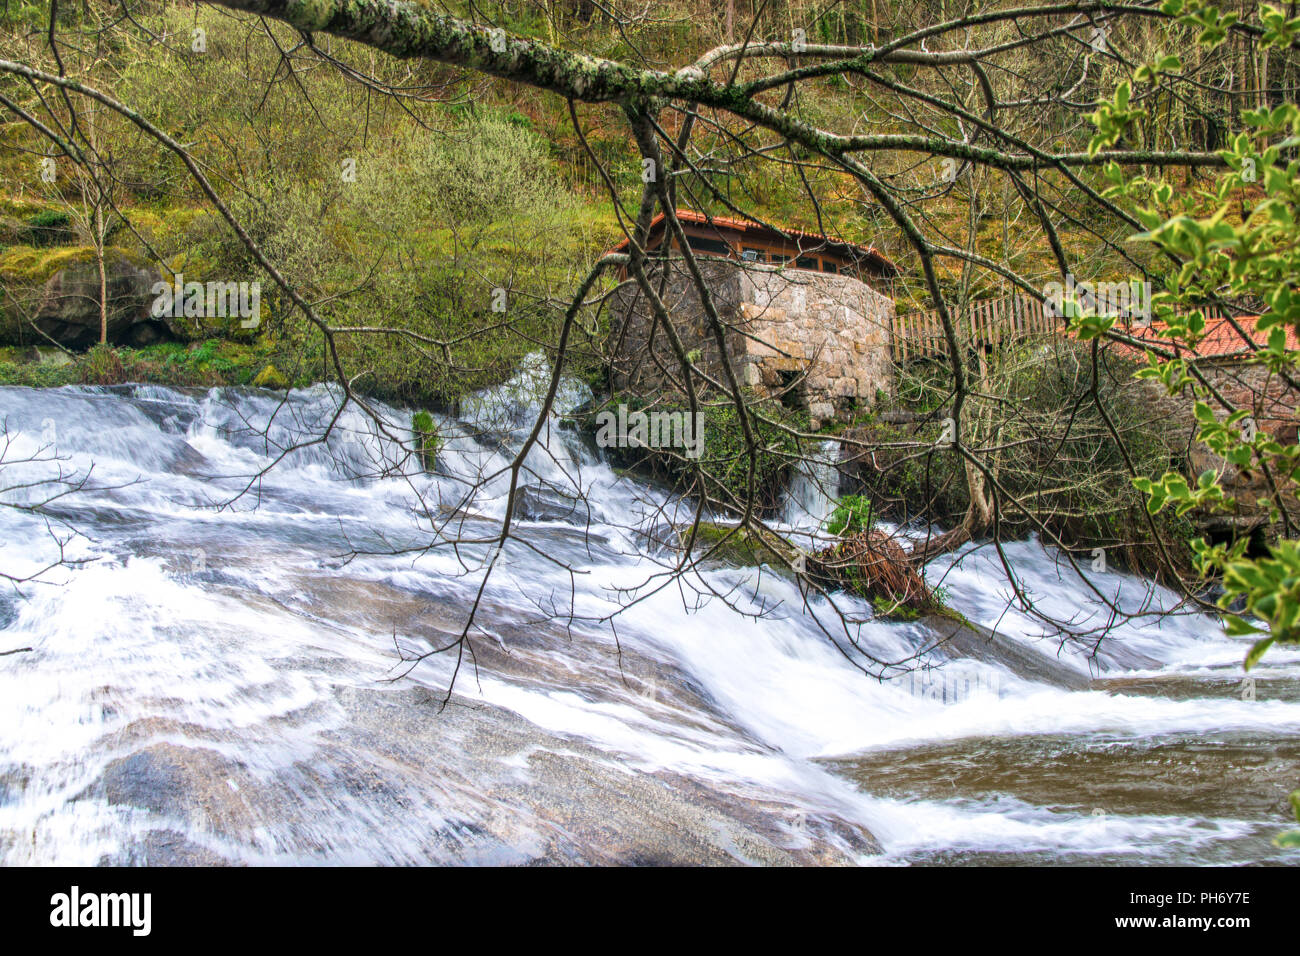 La cascata e gli antichi mulini ad acqua in Galizia, Spagna. Parco naturale del fiume Barosa Foto Stock